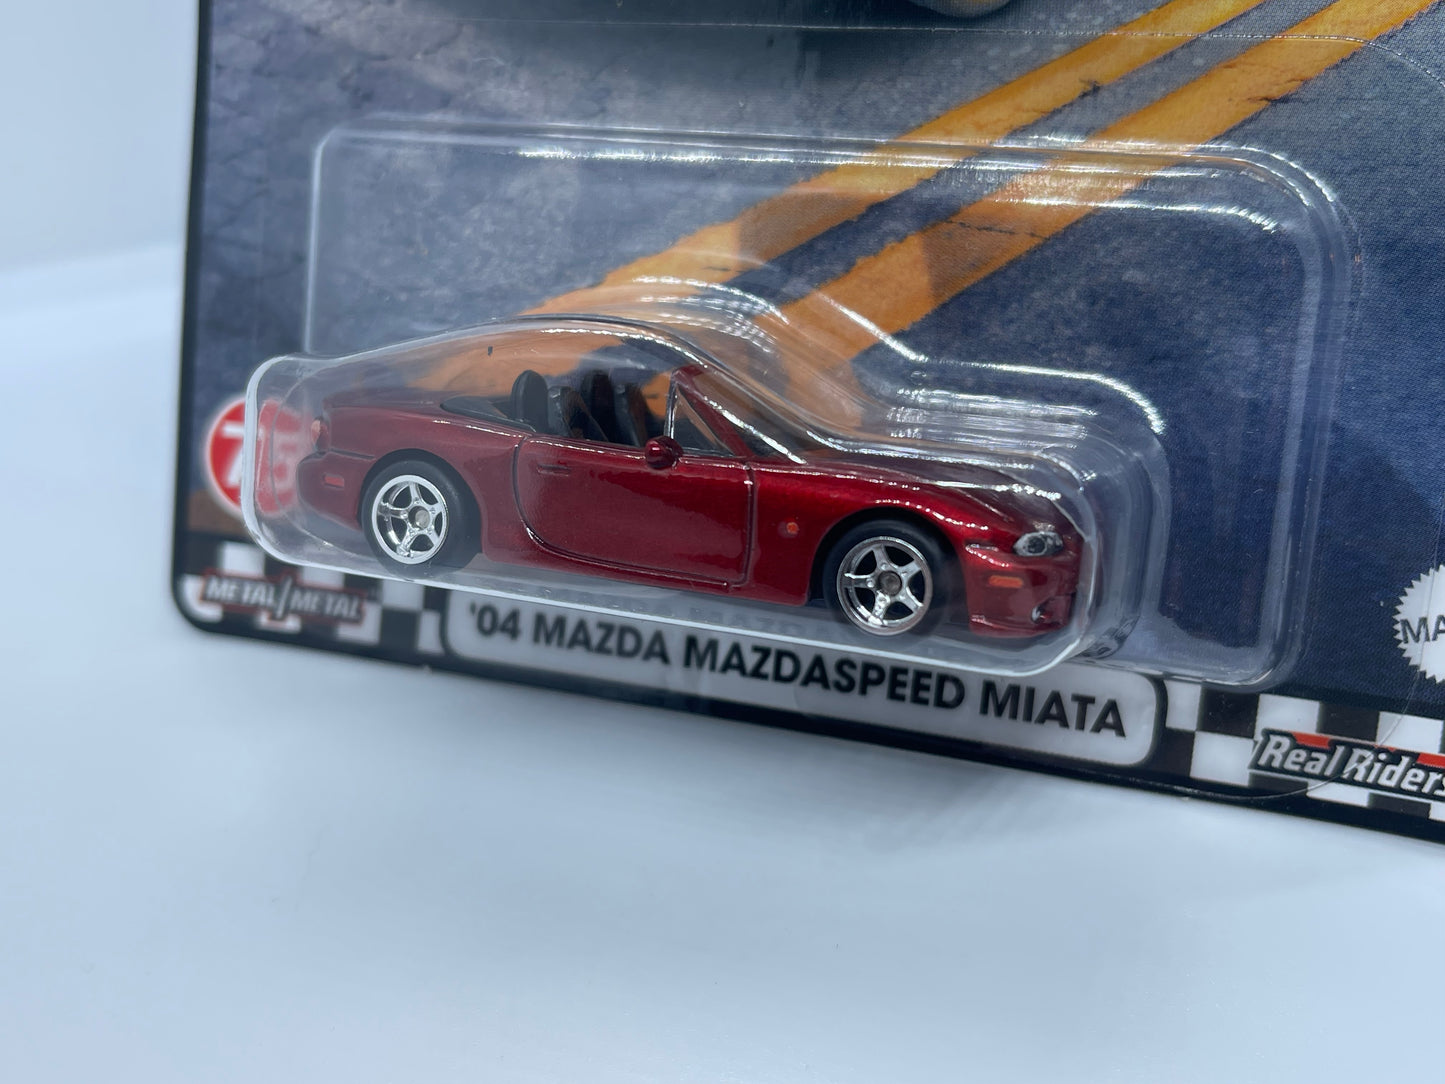 Hot Wheels Premium - ‘04 Mazda MX-5 Miata Mazdaspeed - Boulevard